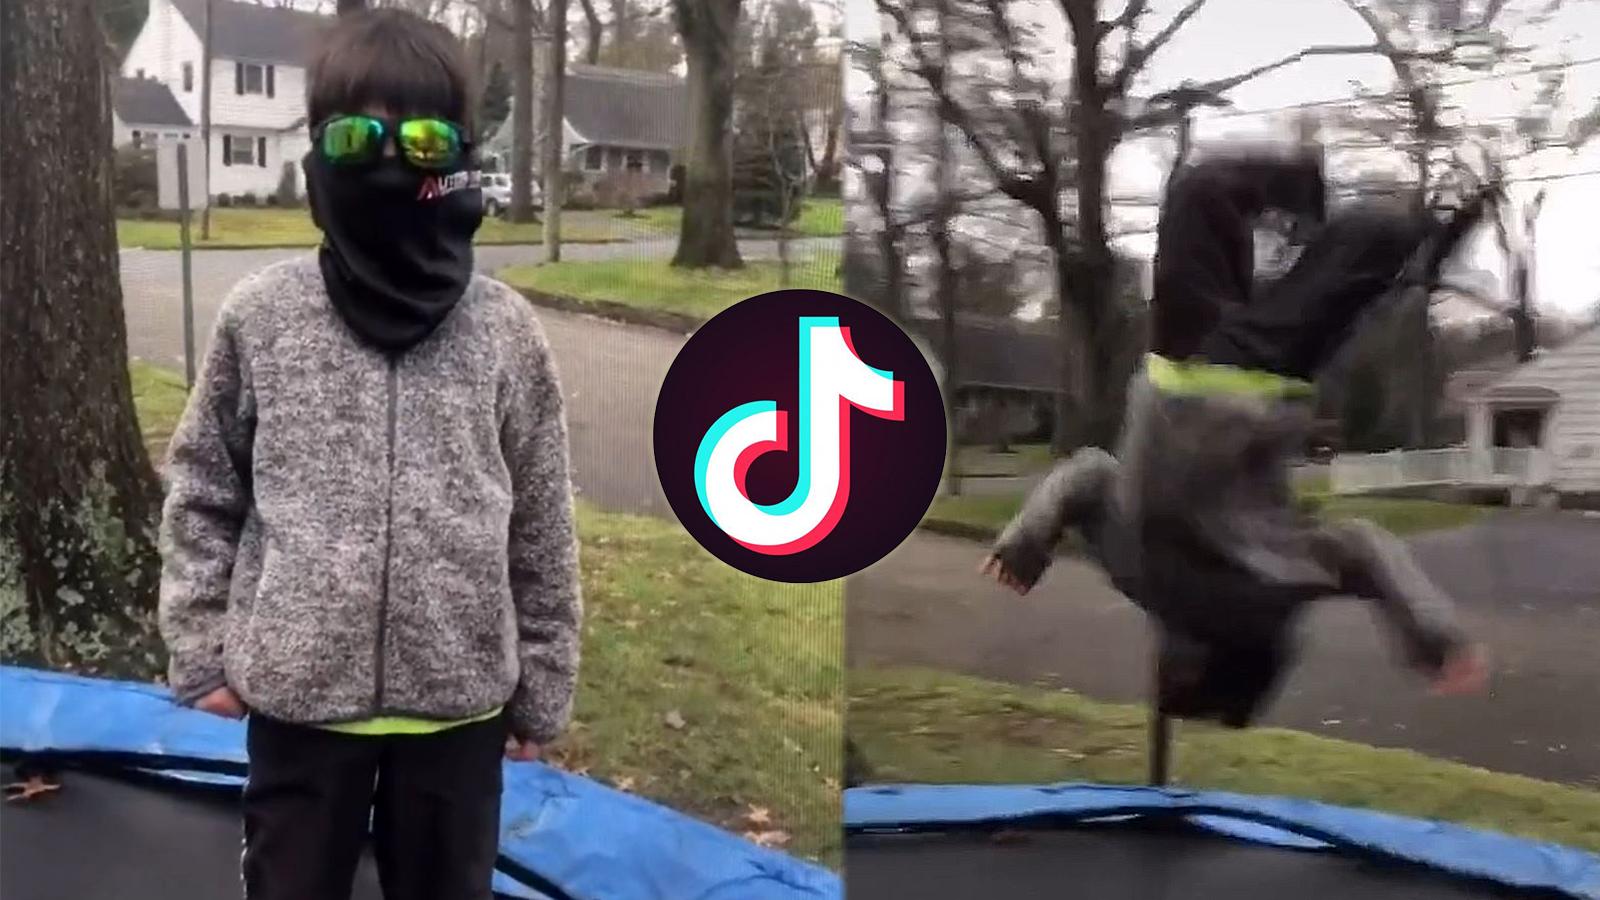 Child goes viral on TikTok for backflip video